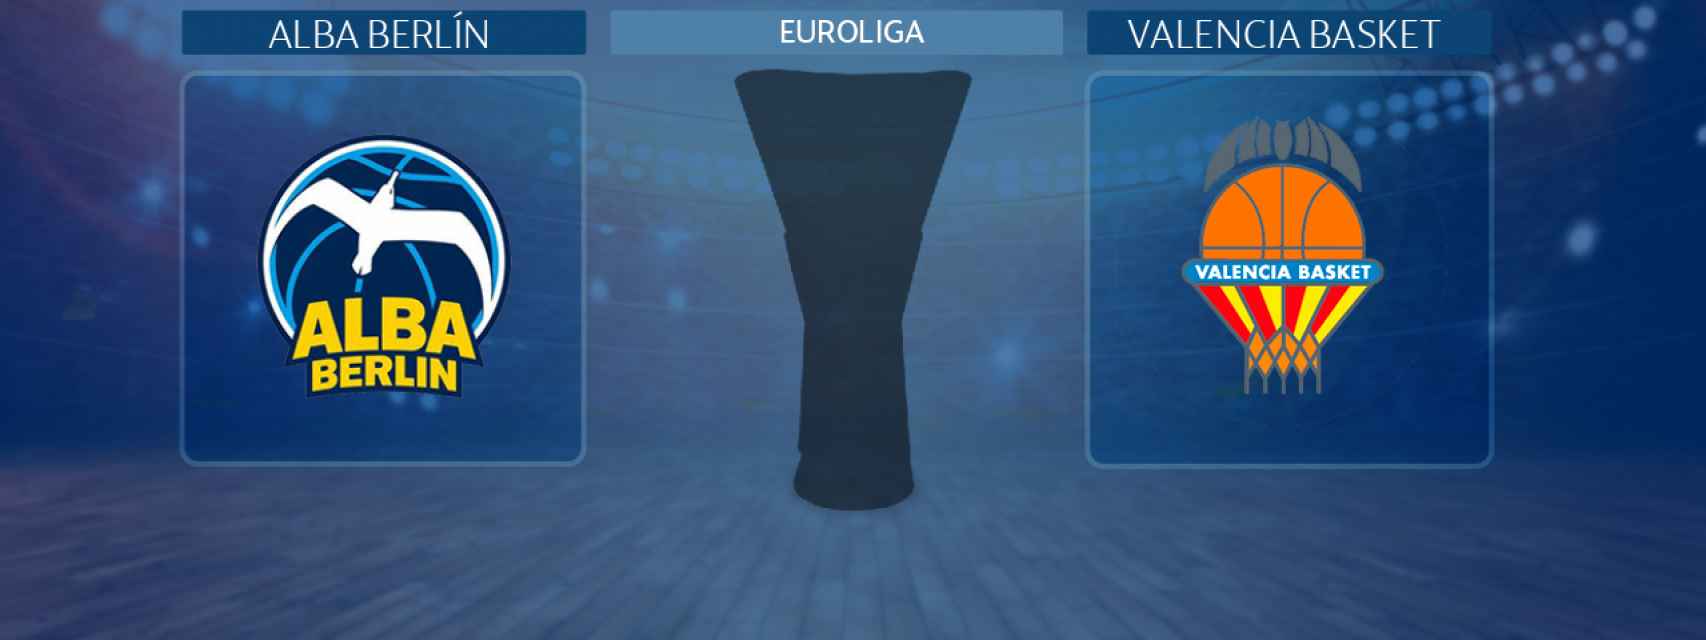 Alba Berlín - Valencia Basket, partido de la Euroliga